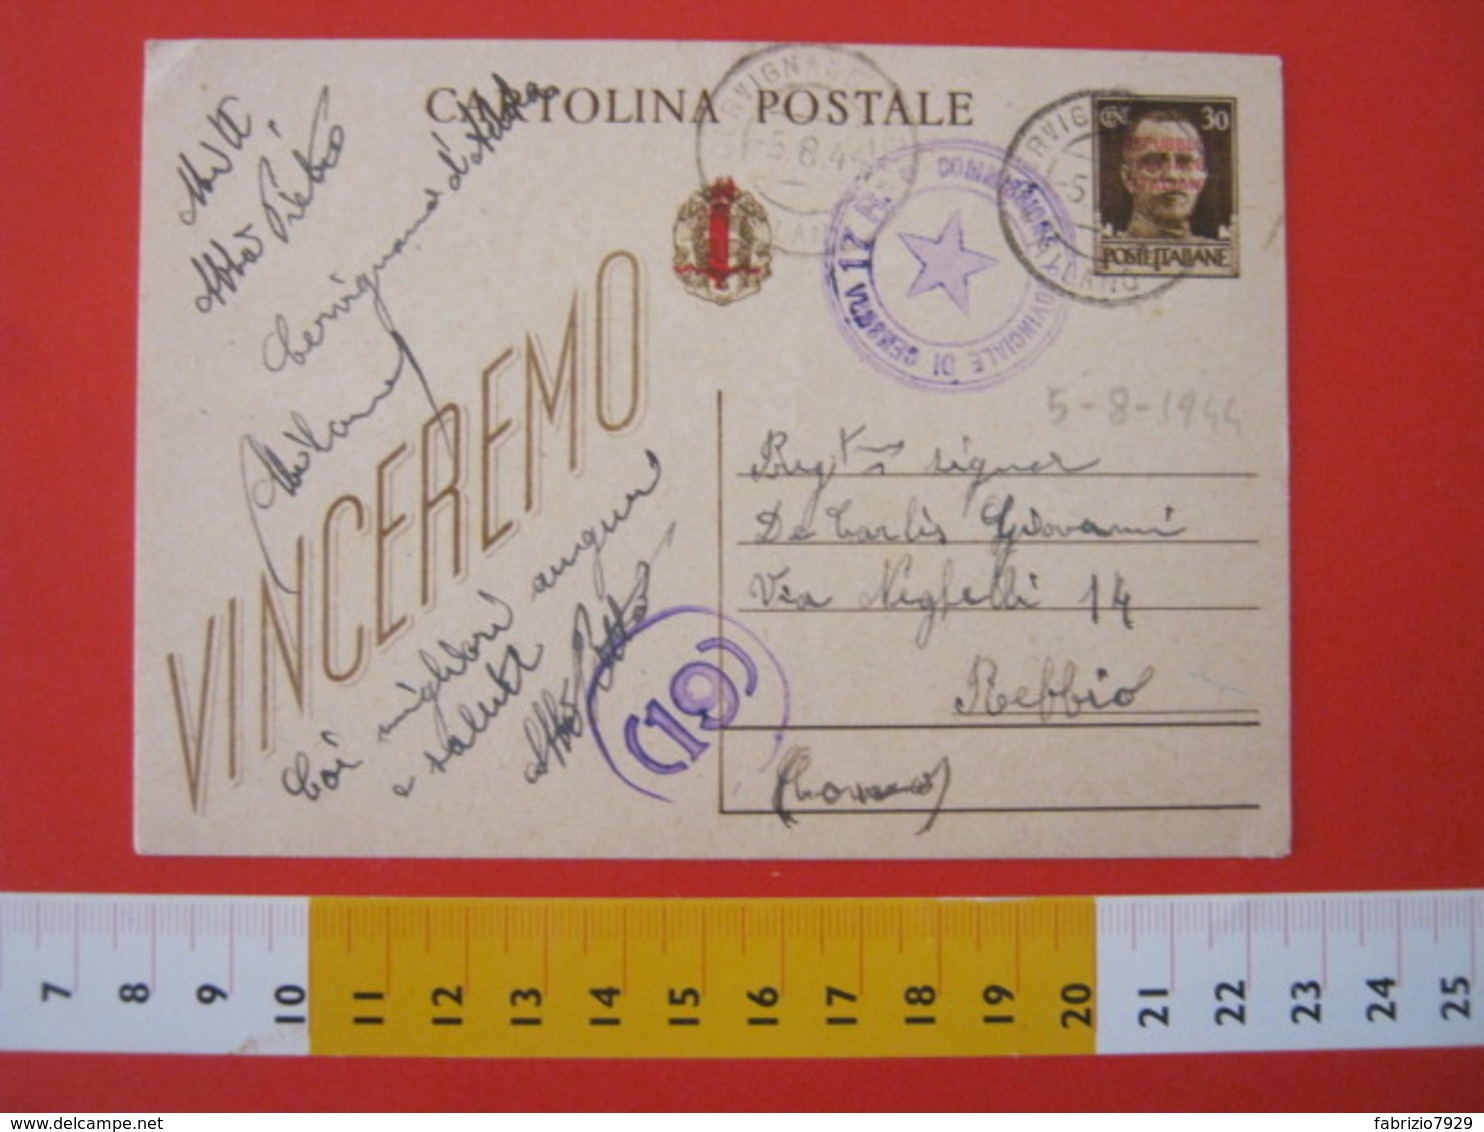 PC.3 ITALIA RSI CARTOLINA POSTALE - 1944 VINCEREMO SOVRASTAMPATA ROSSO FASCIO DA CERVIGNANO ADDA MILANO LODI 5/8 CENSURA - Entero Postal